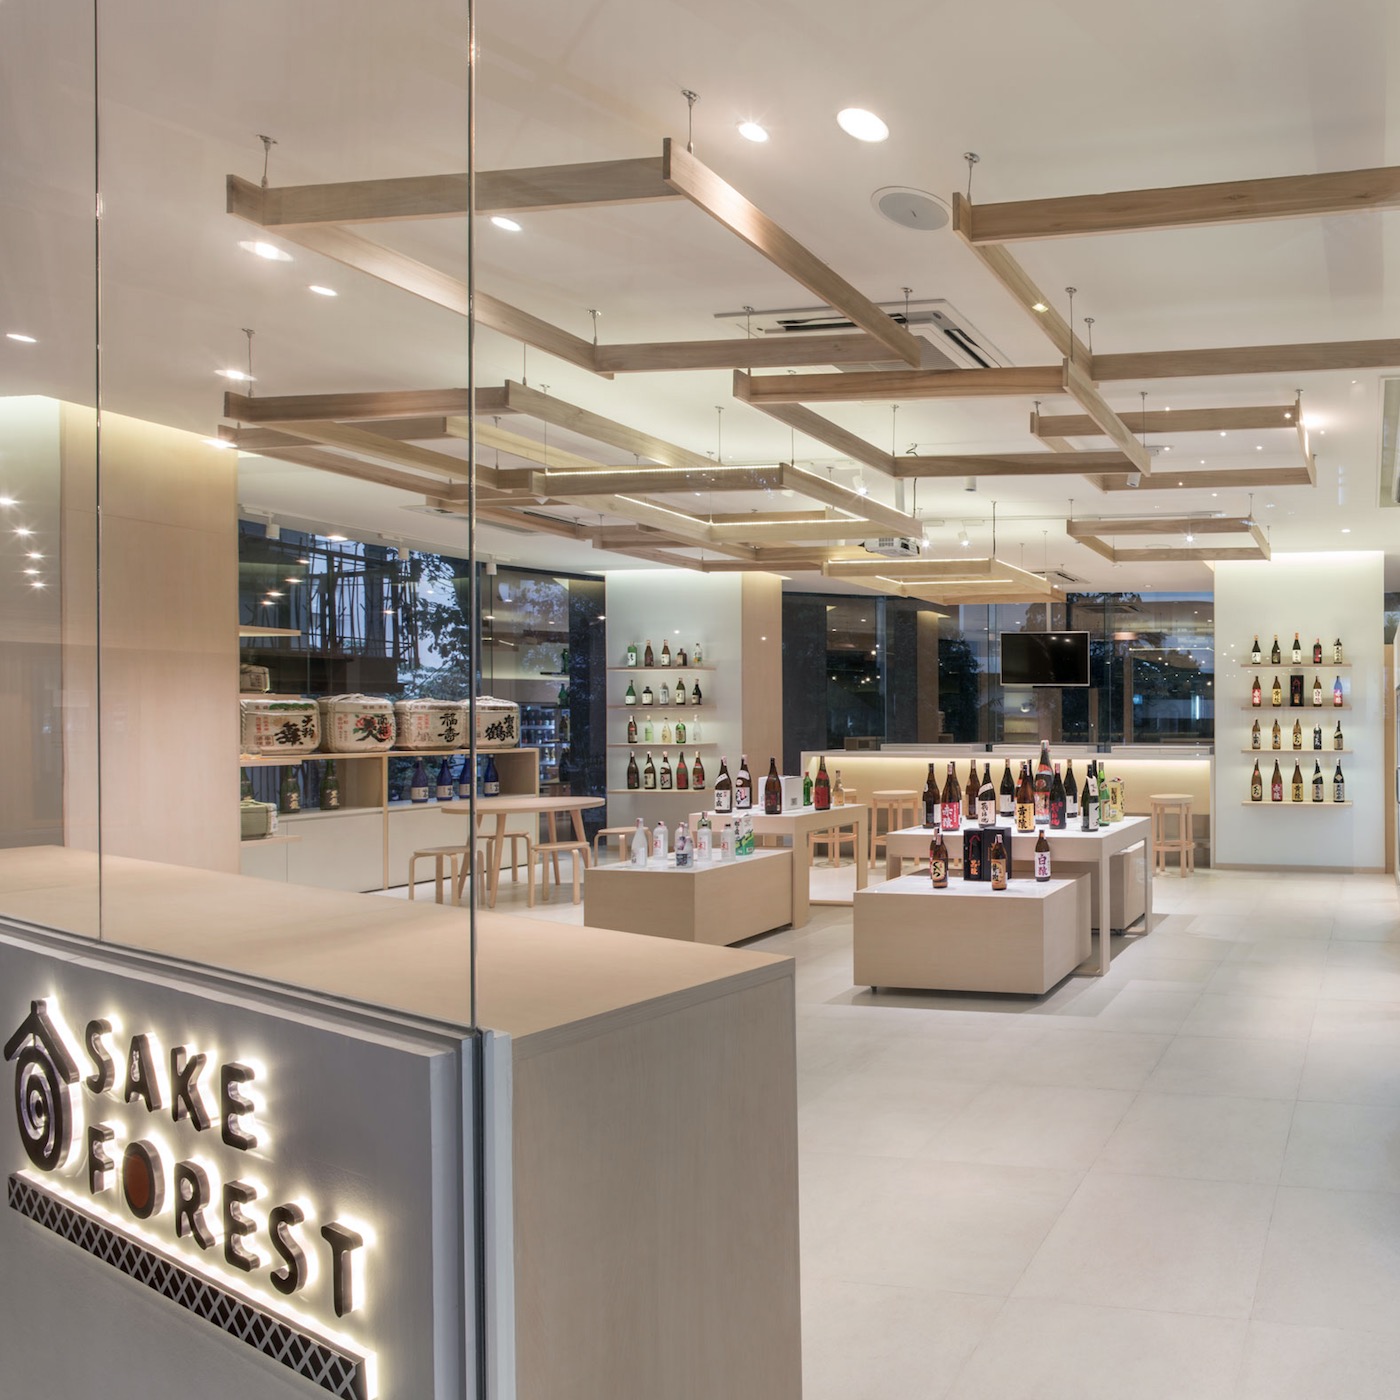 Shop Design : Sake Forest